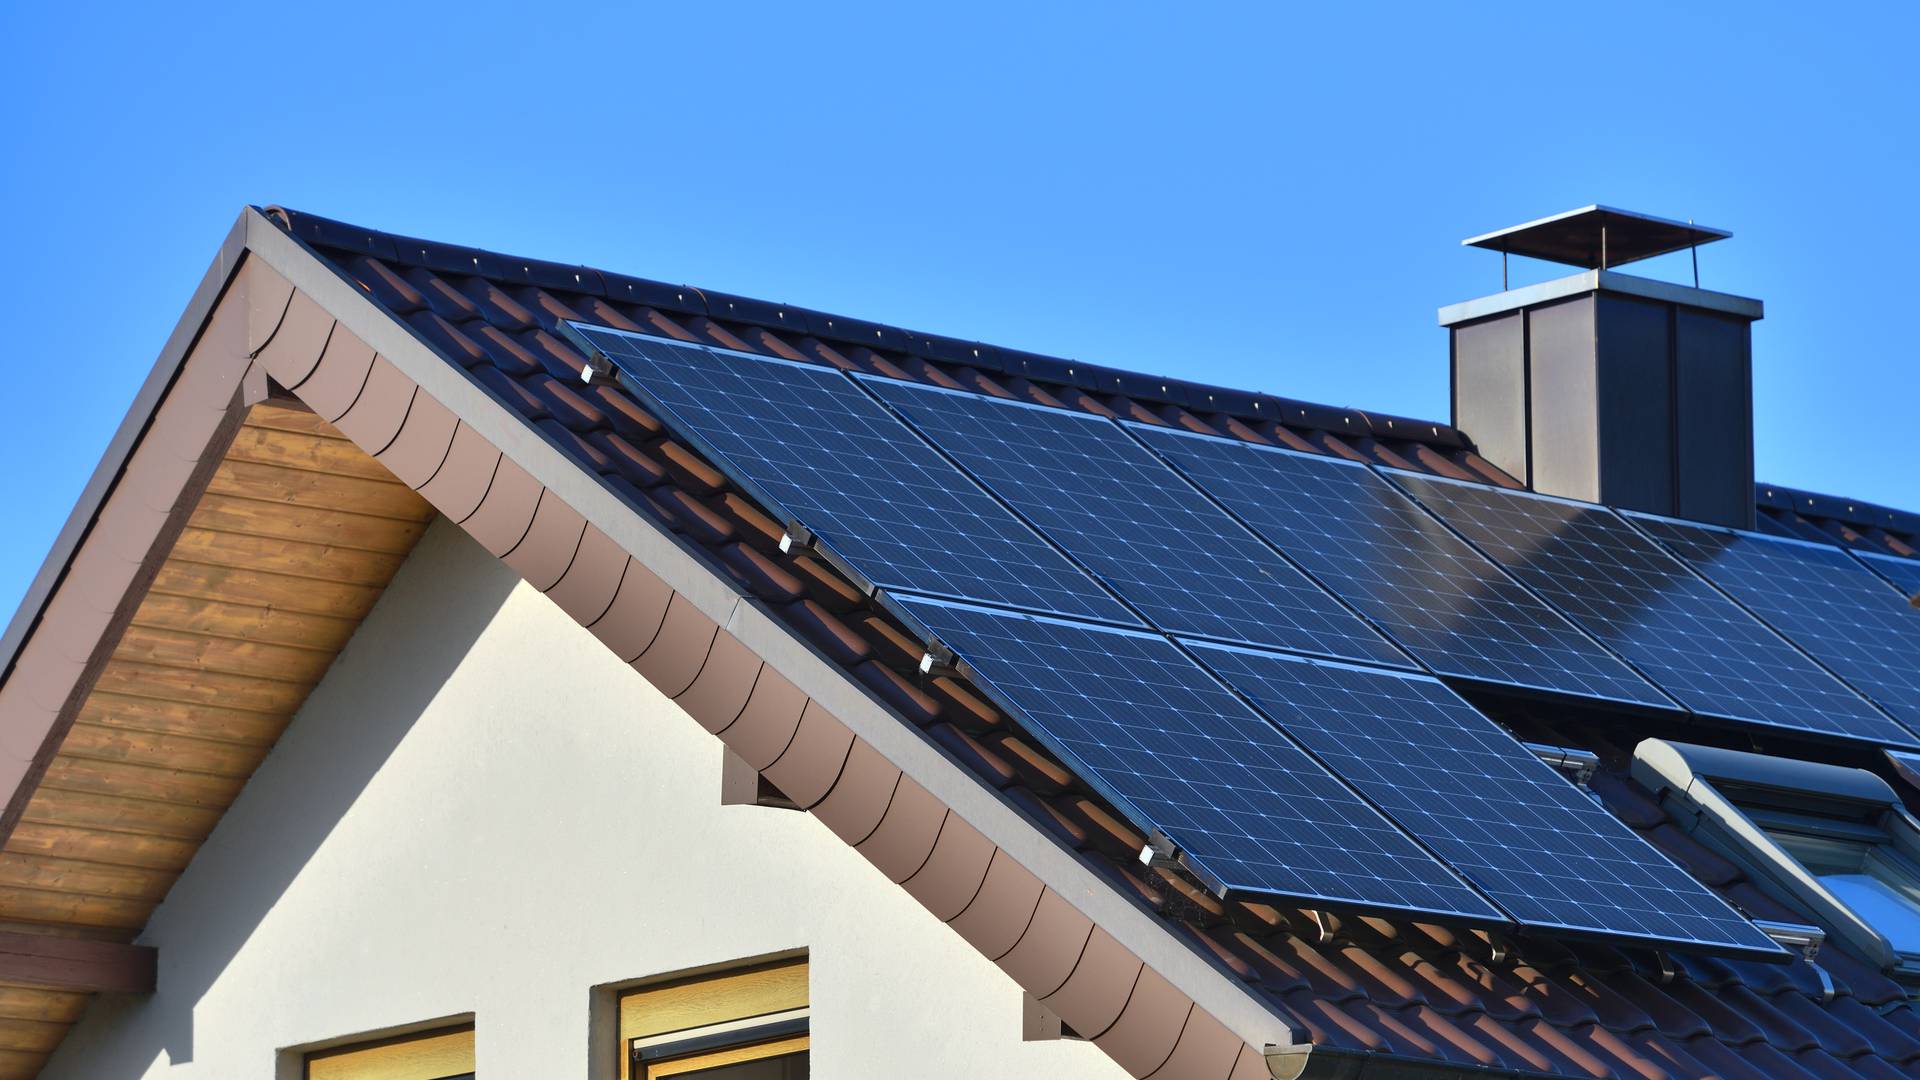 panele słoneczne zainstalowane na dachu dwuspadowym -  w 2021